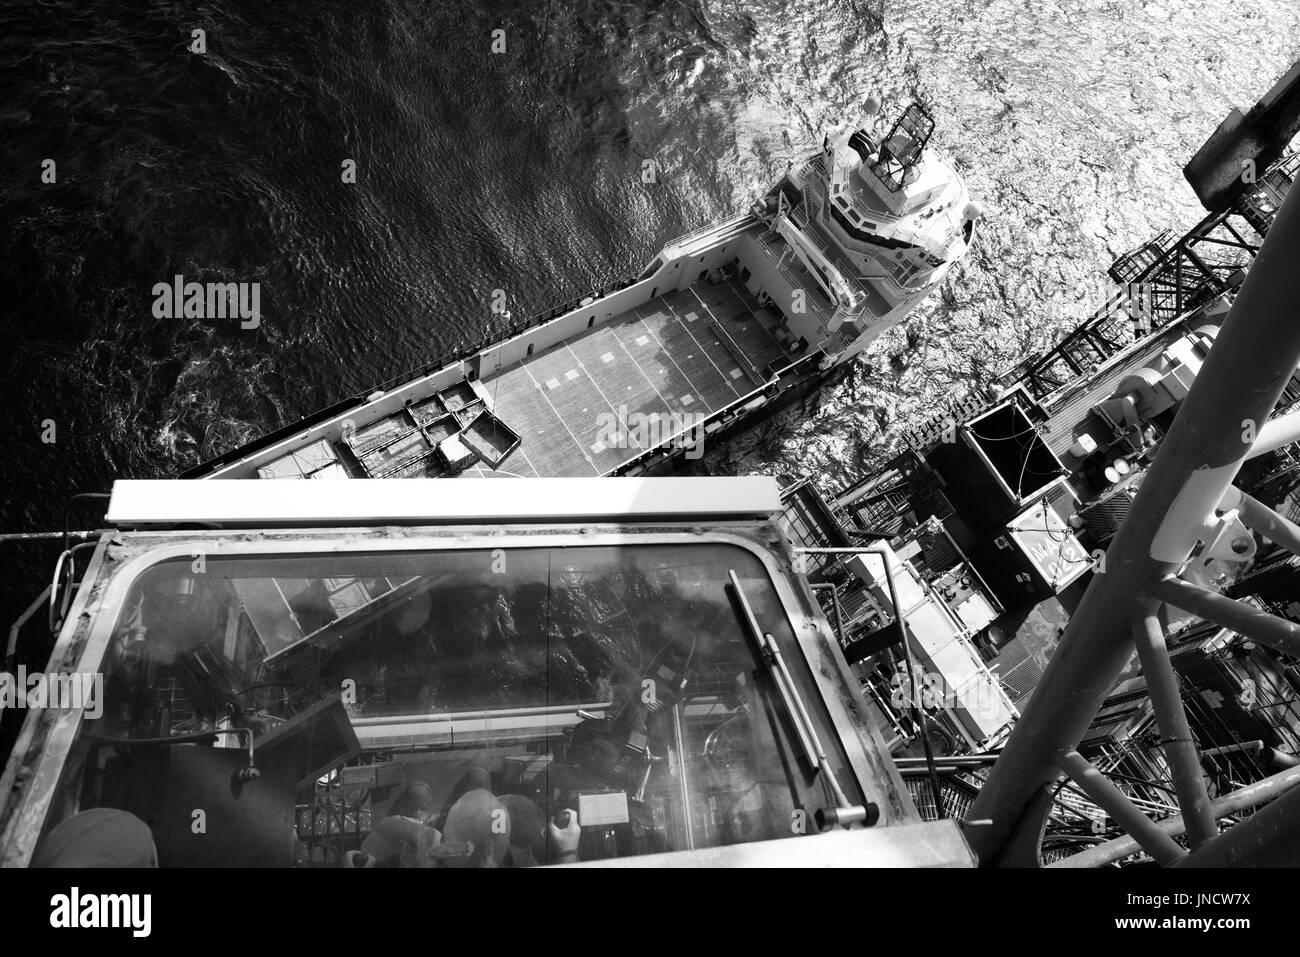 Immagine in bianco e nero di un mare del Nord nel settore petrolifero e del gas naturale, gru decollare le forniture dal recipiente di alimentazione. Credito: lee ramsden / alamy Foto Stock